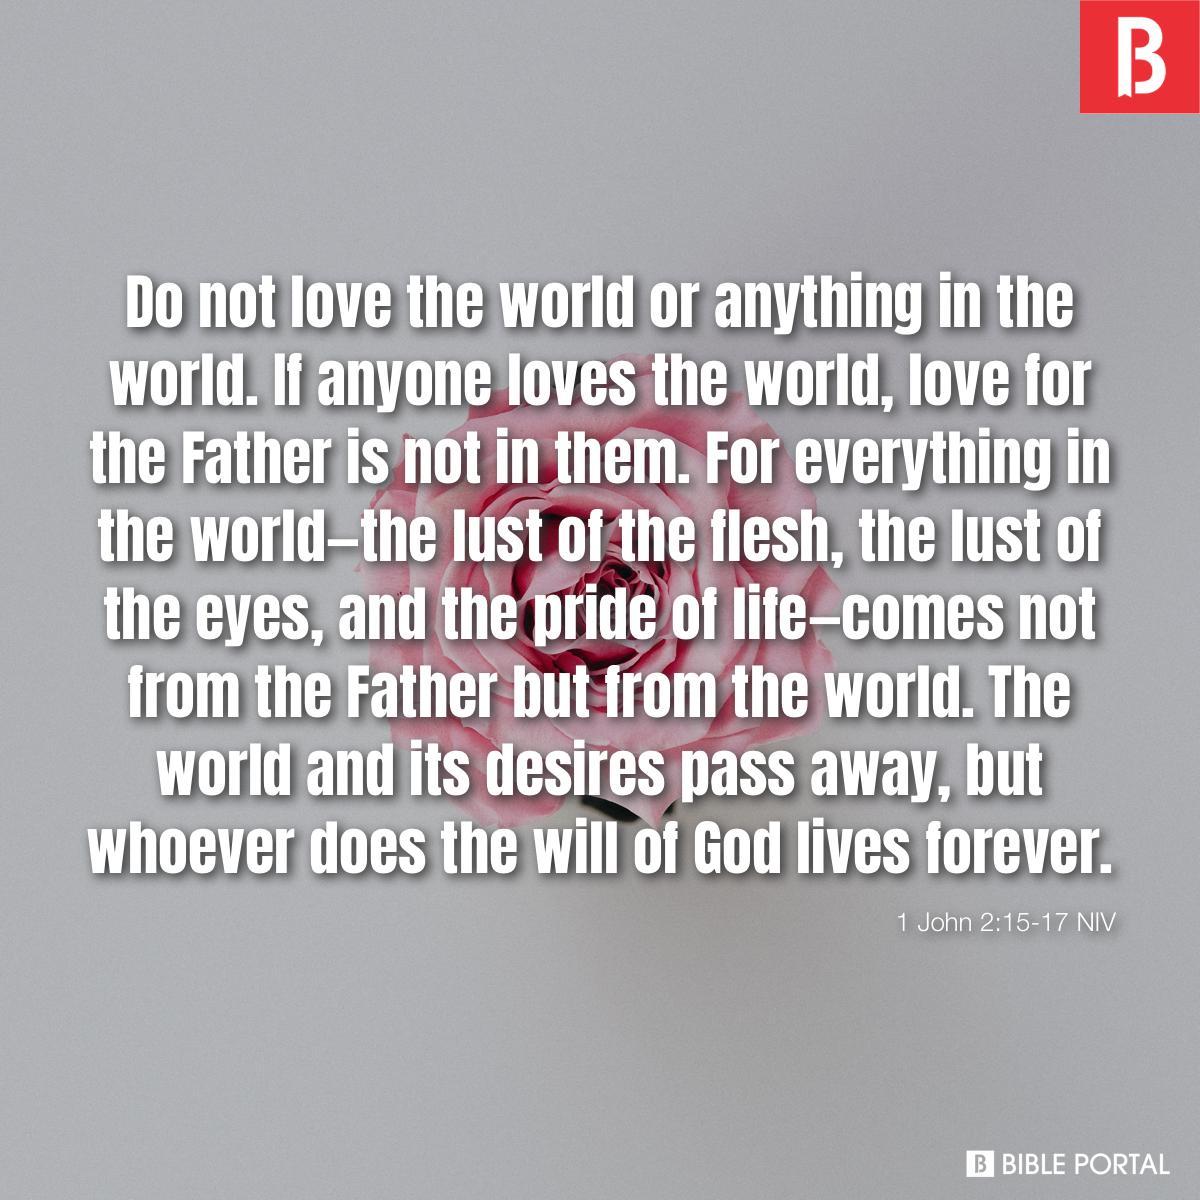 1 John 2:15-17 NIV